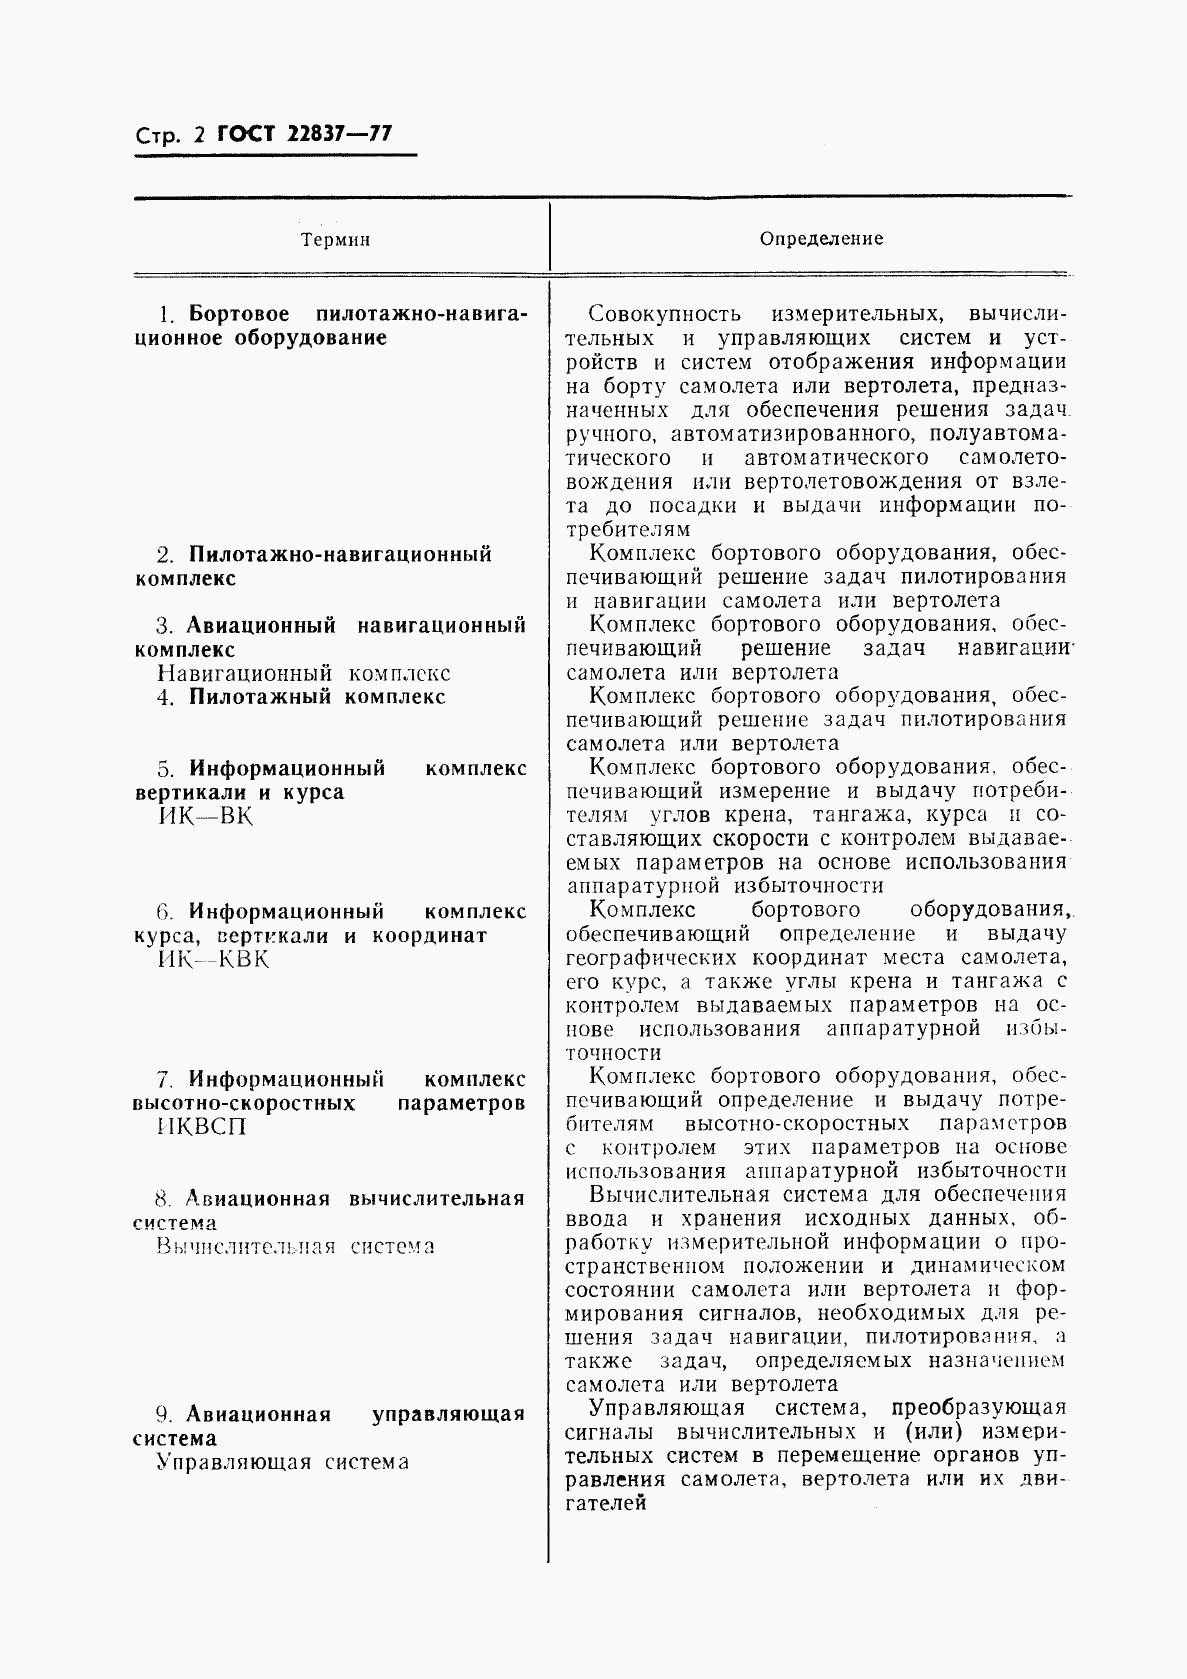 ГОСТ 22837-77, страница 3